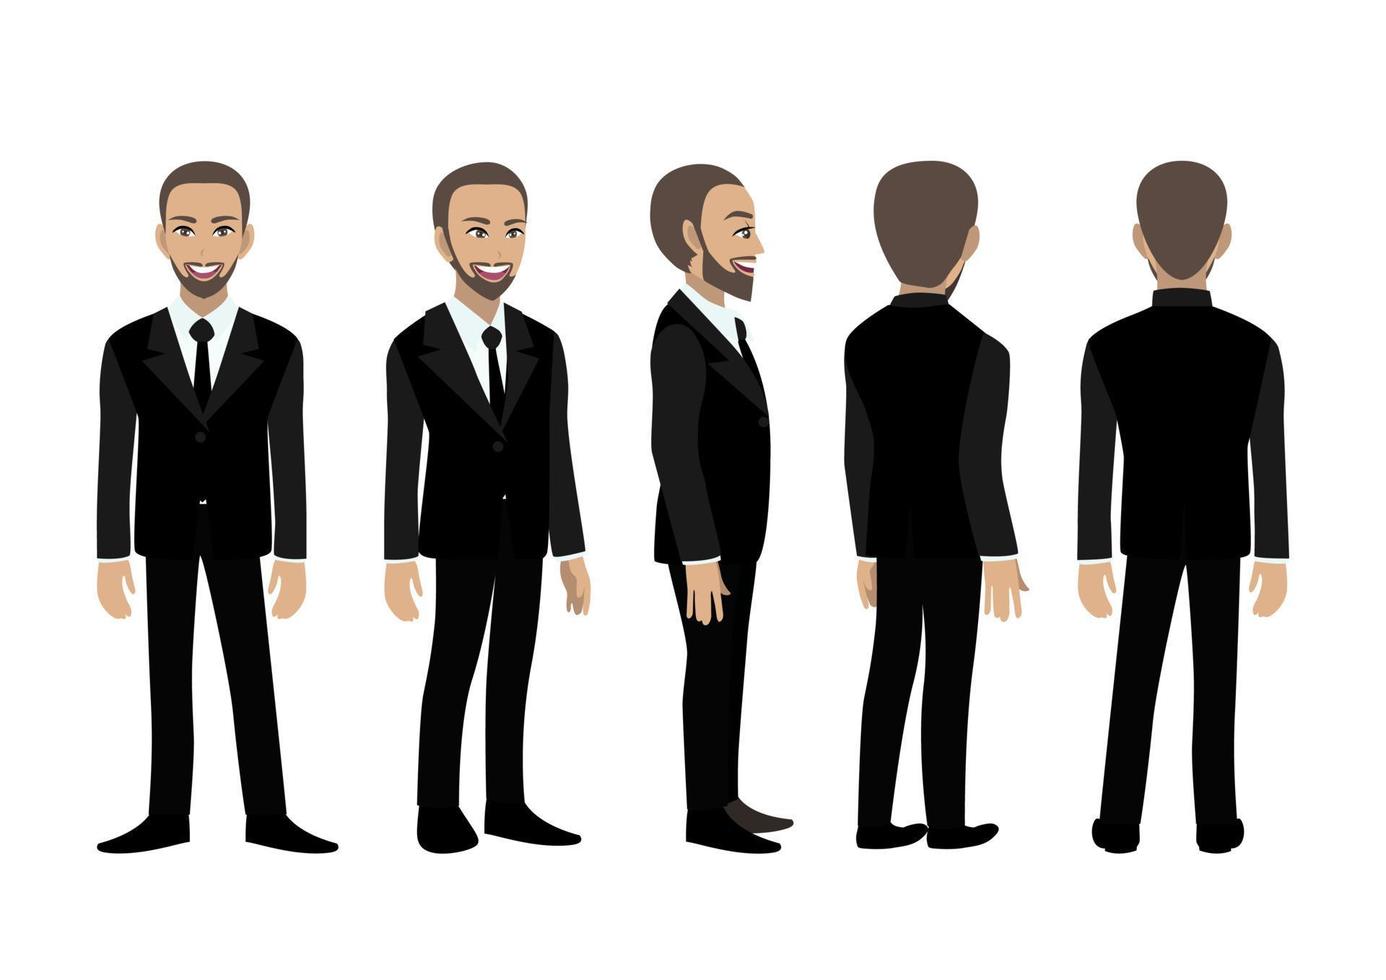 personagem de desenho animado com homem de negócios. frente, lado, costas, 3-4 modos de exibição de personagem animado. ilustração vetorial plana. vetor